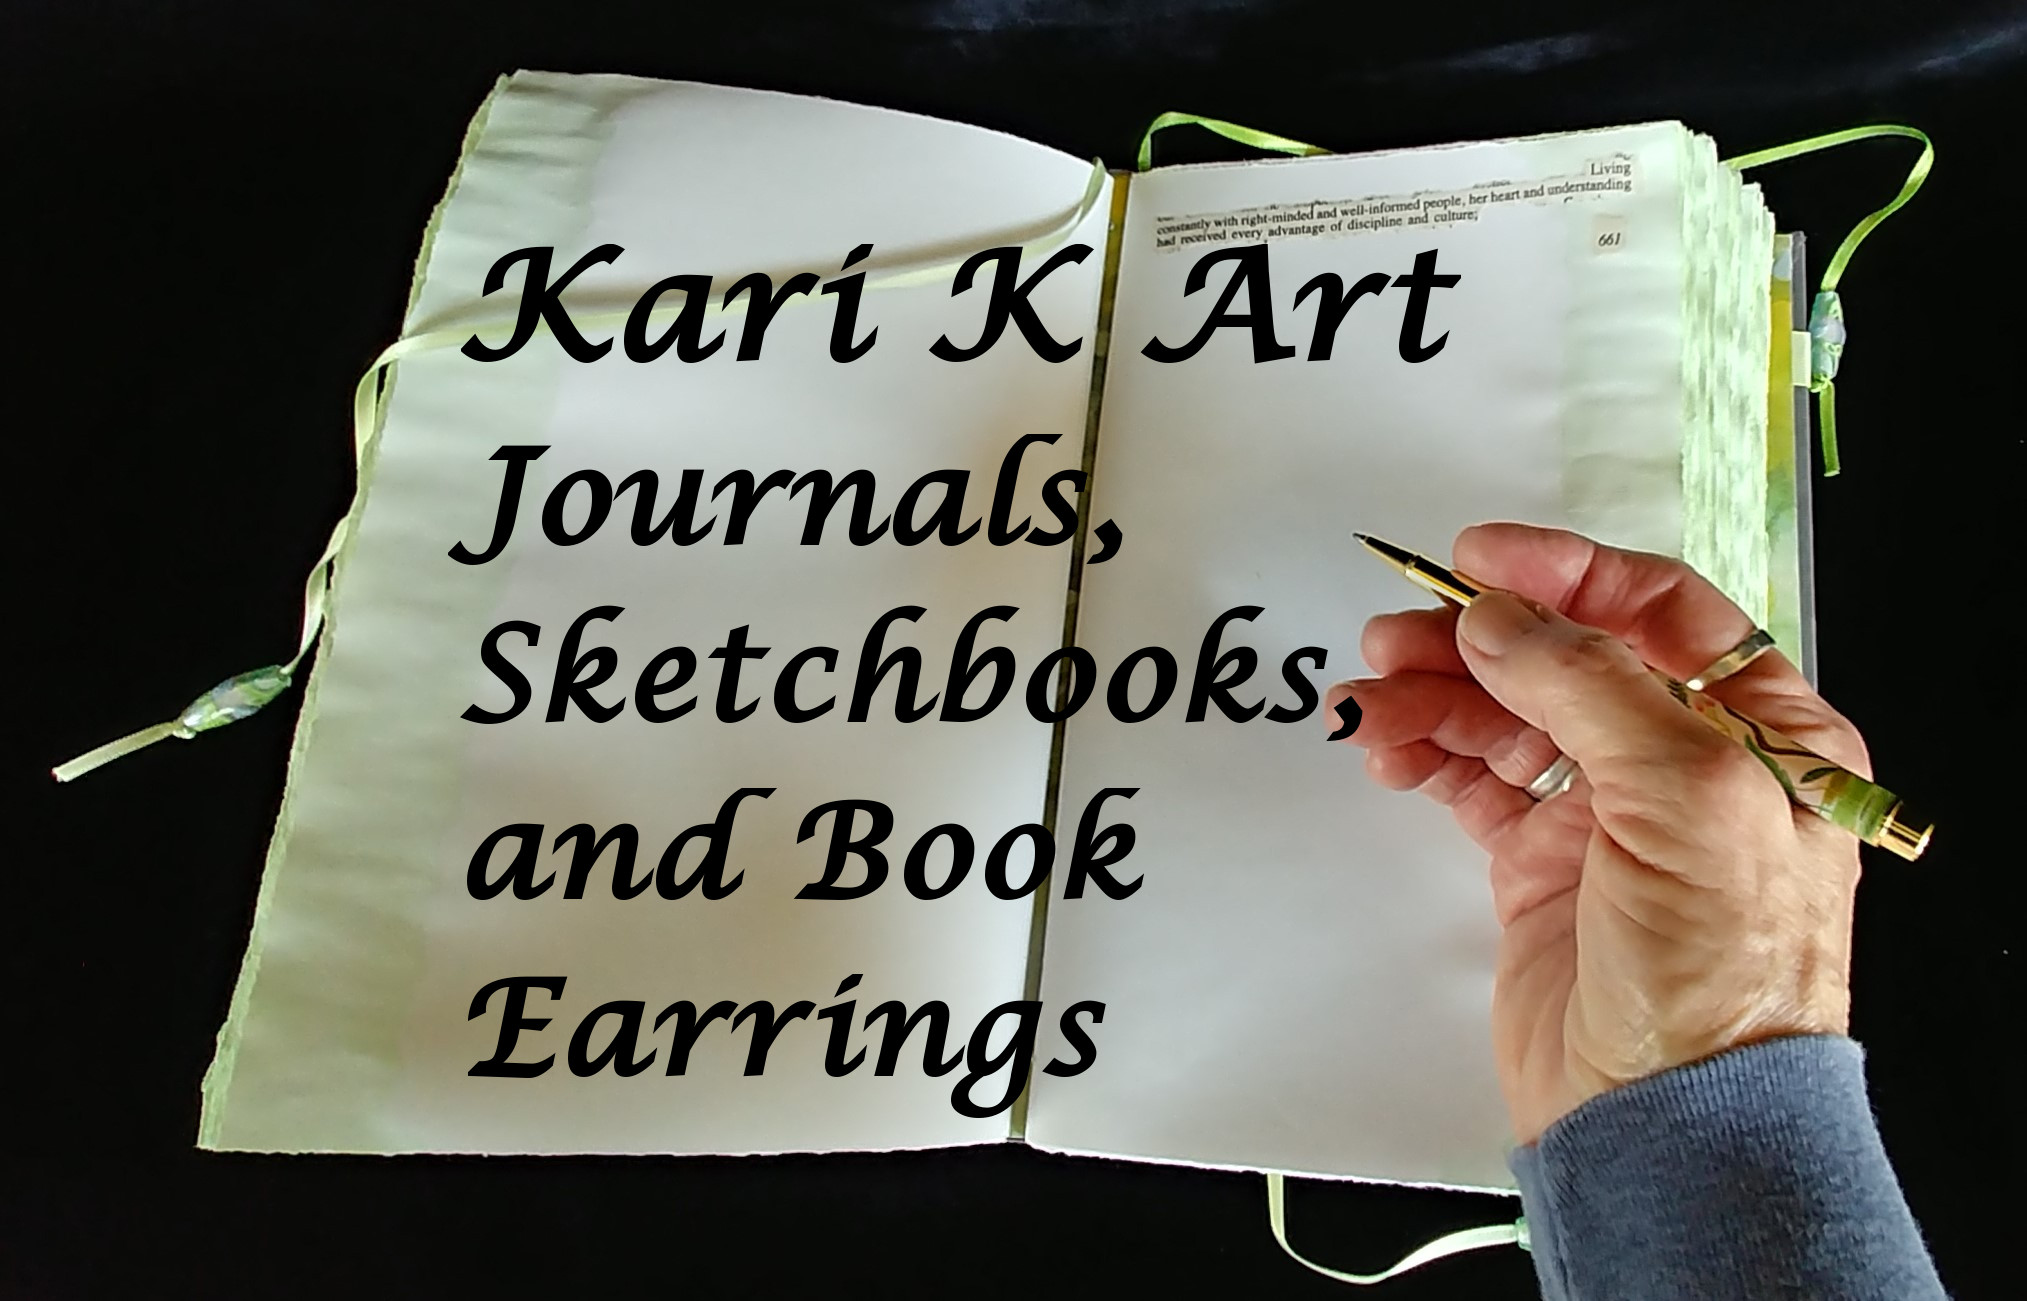 Journals, sketchbooks, book
                              earrings